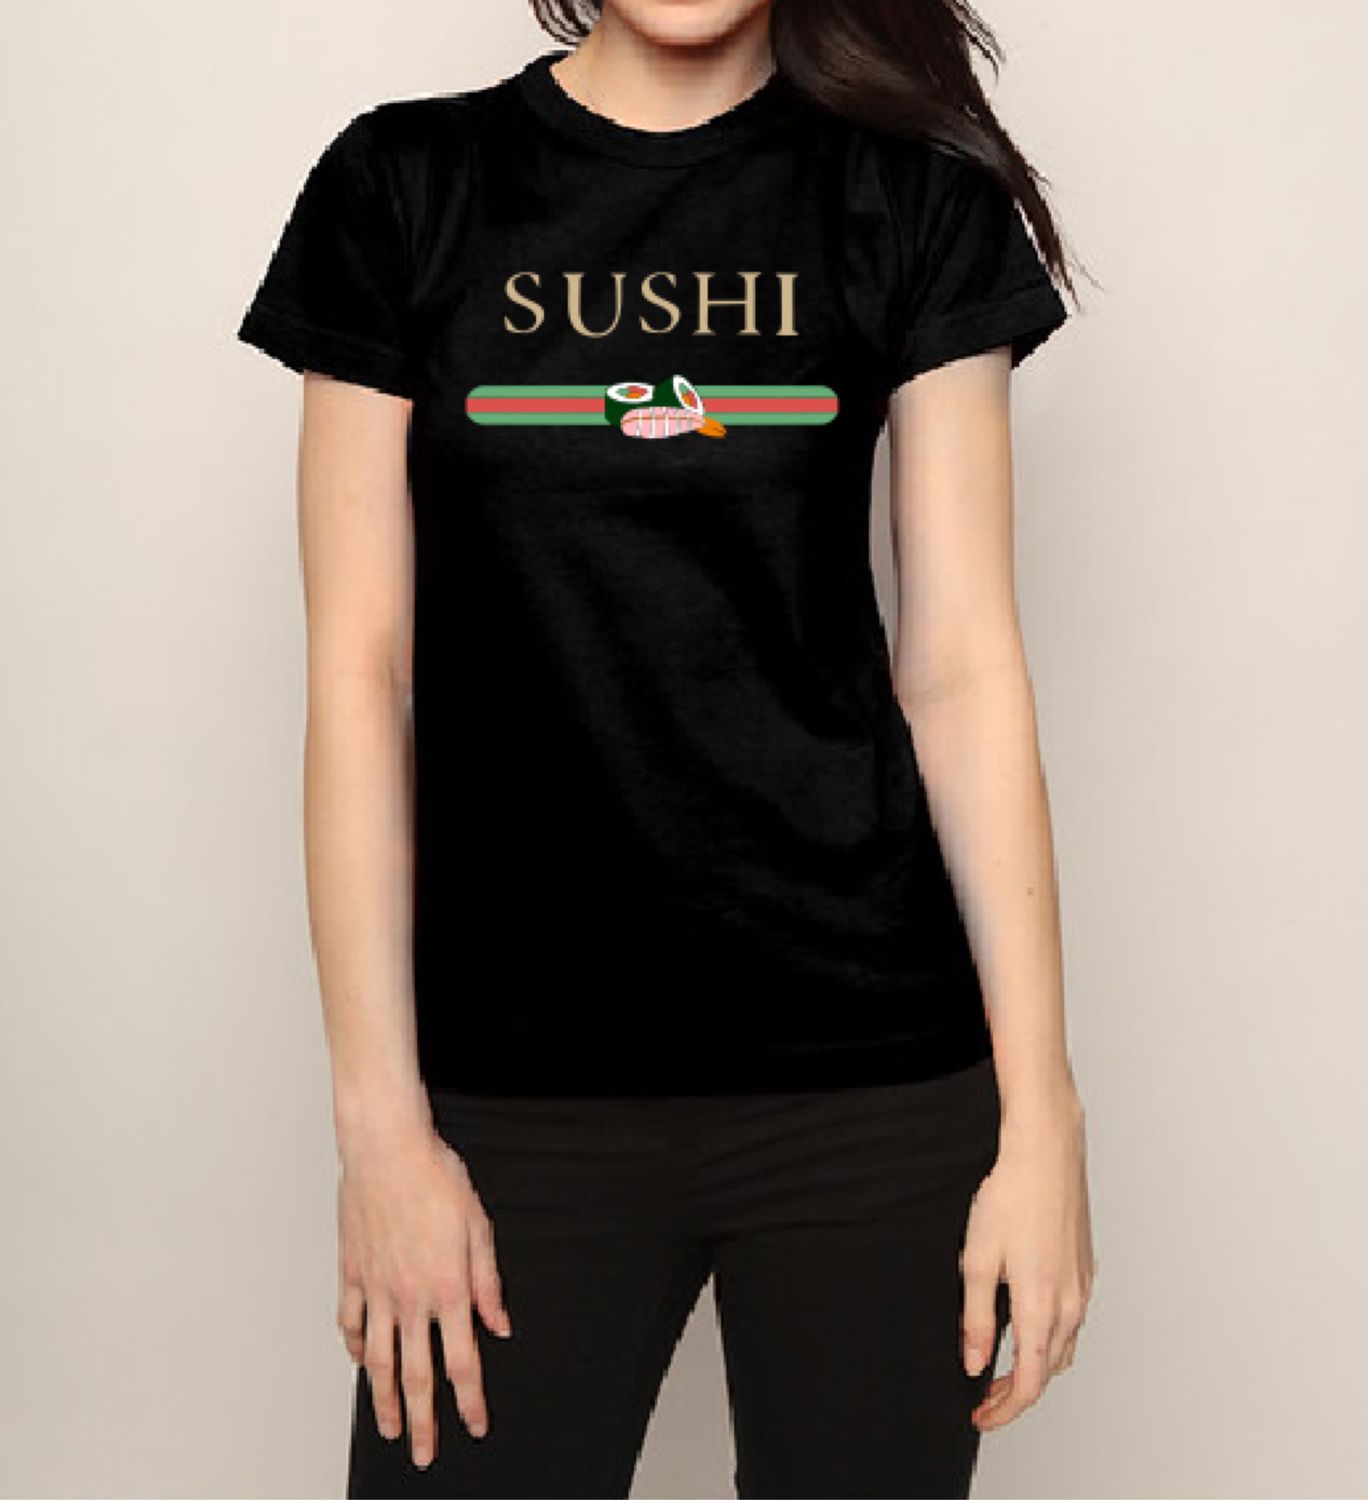 Sushi Gucci  parody  T shirt       